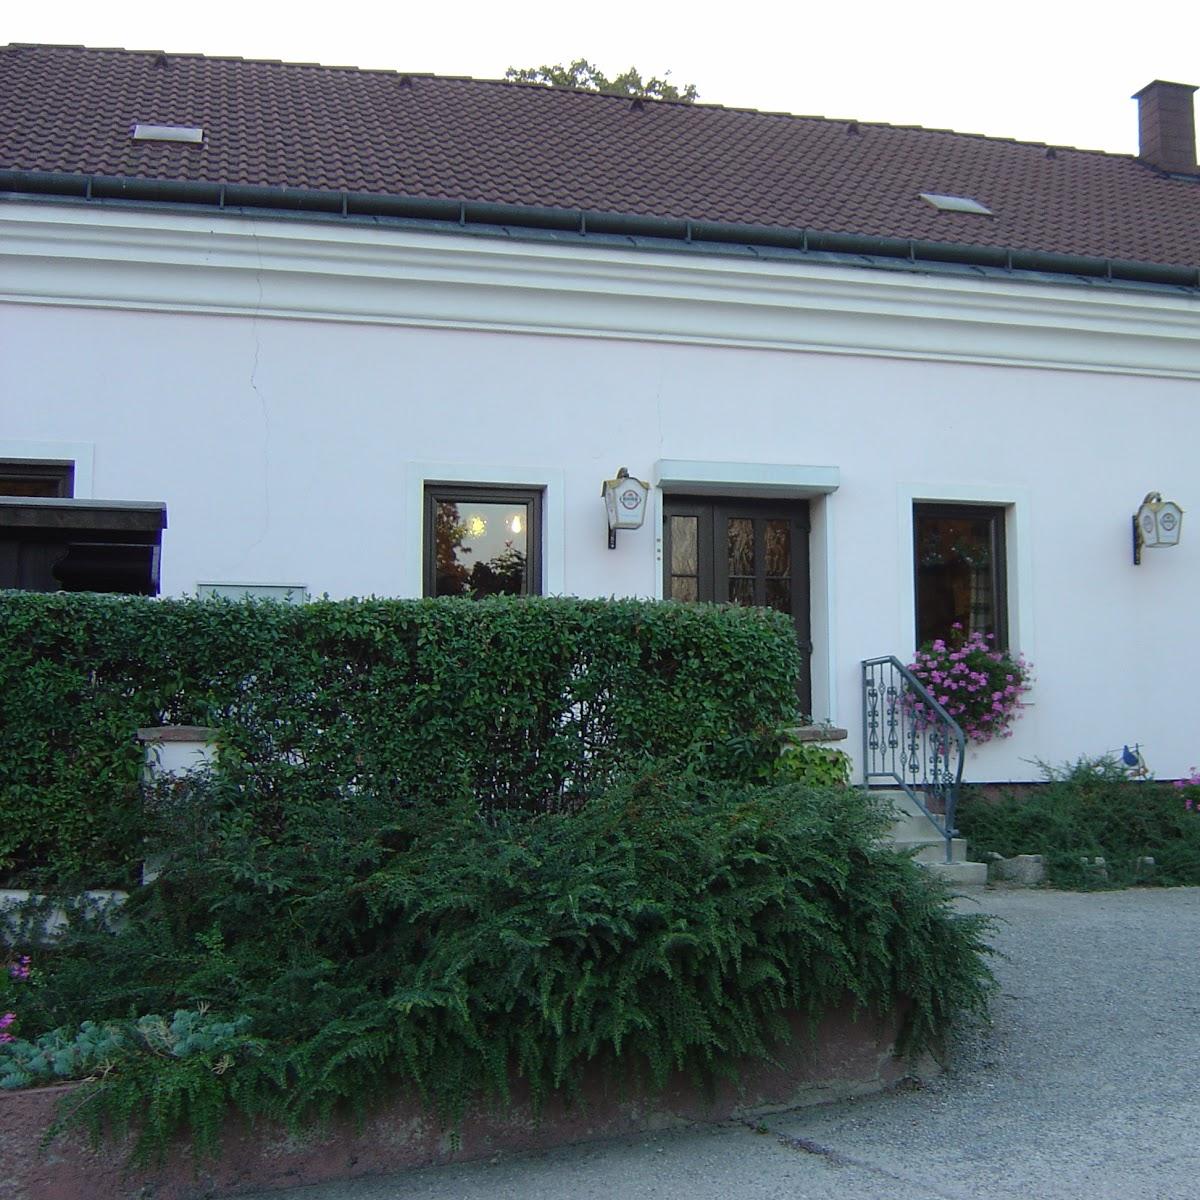 Restaurant "Gasthaus Leberbauer" in Fuchsenbigl